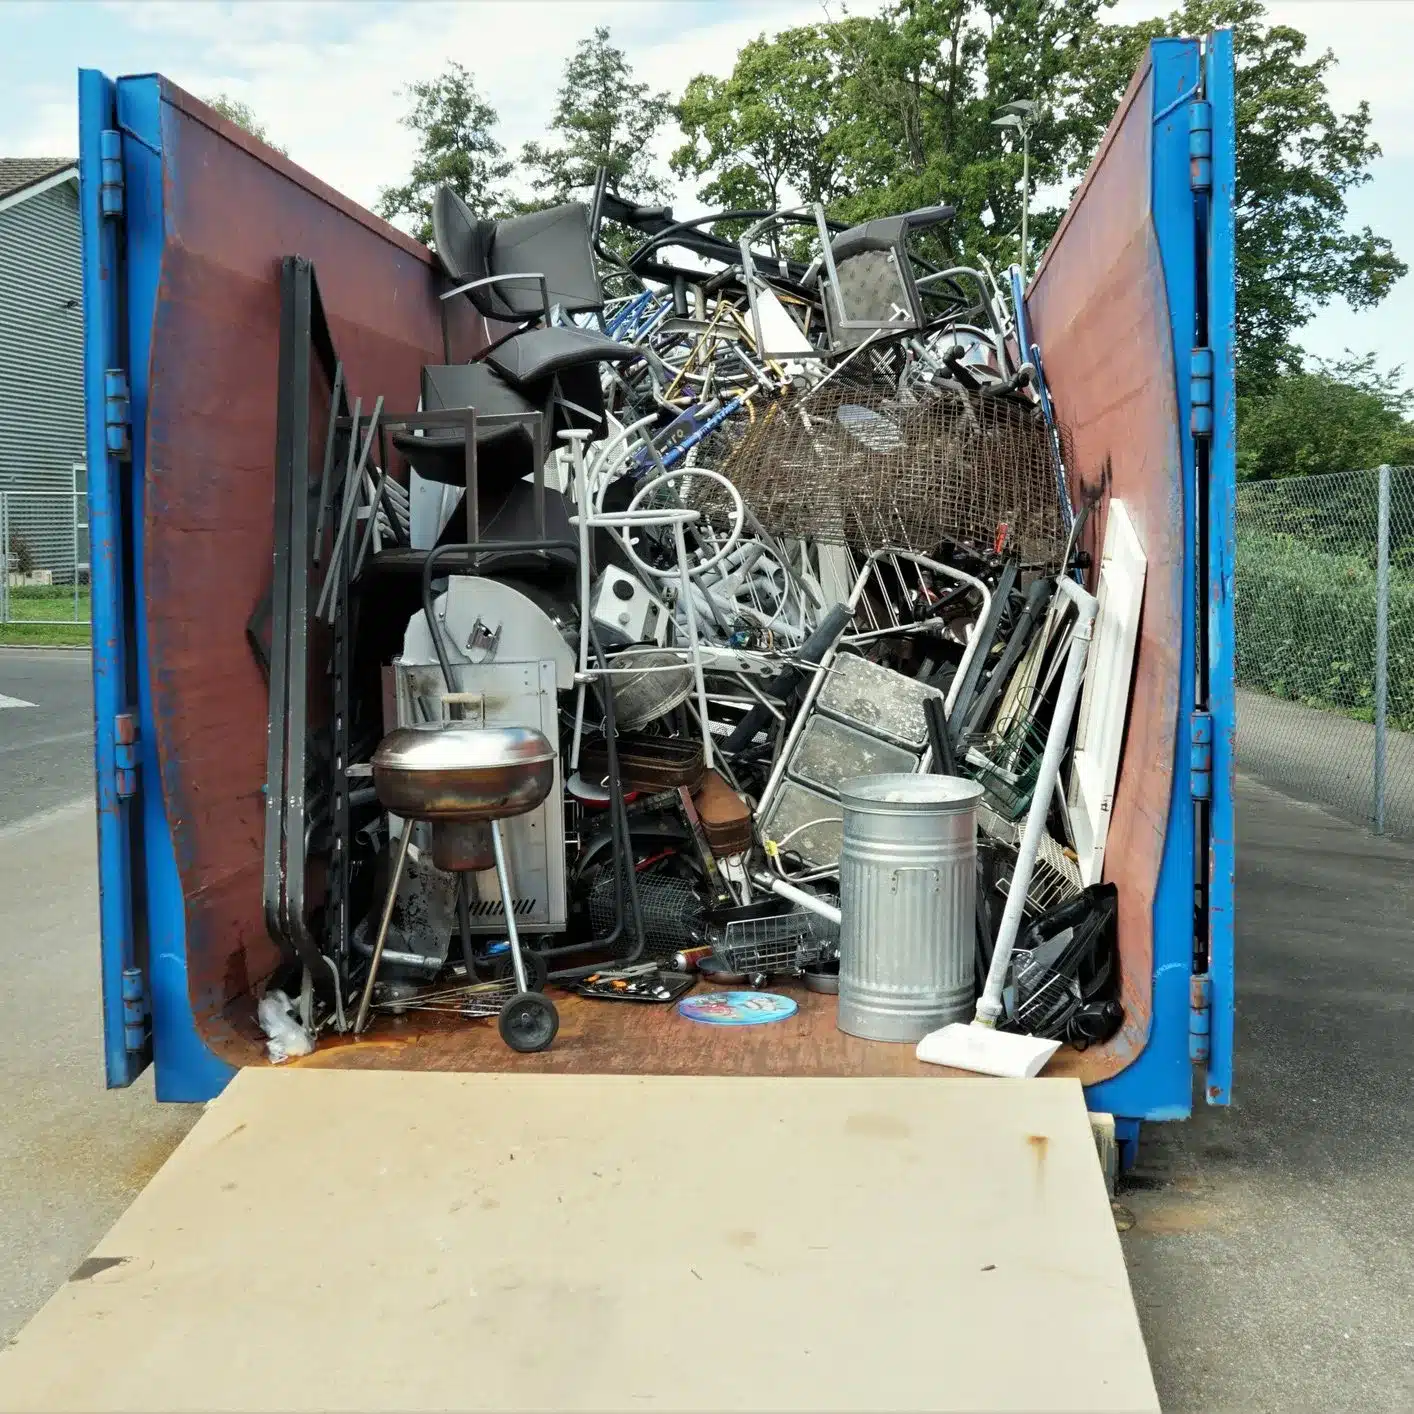 Blue Dumpster full of Metal